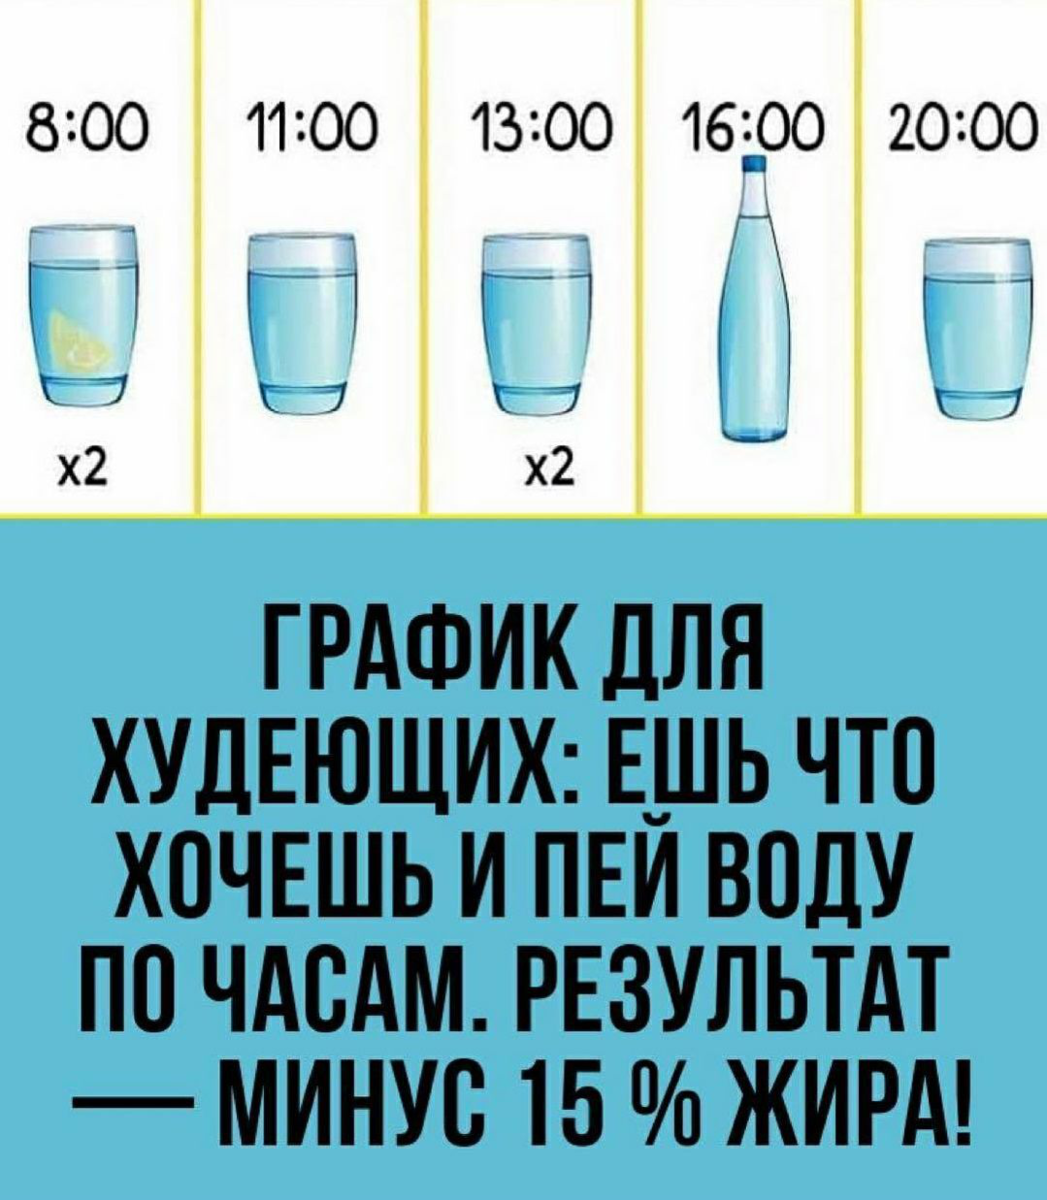 Вода для похудения: как правильно пить, чтобы добиться результата